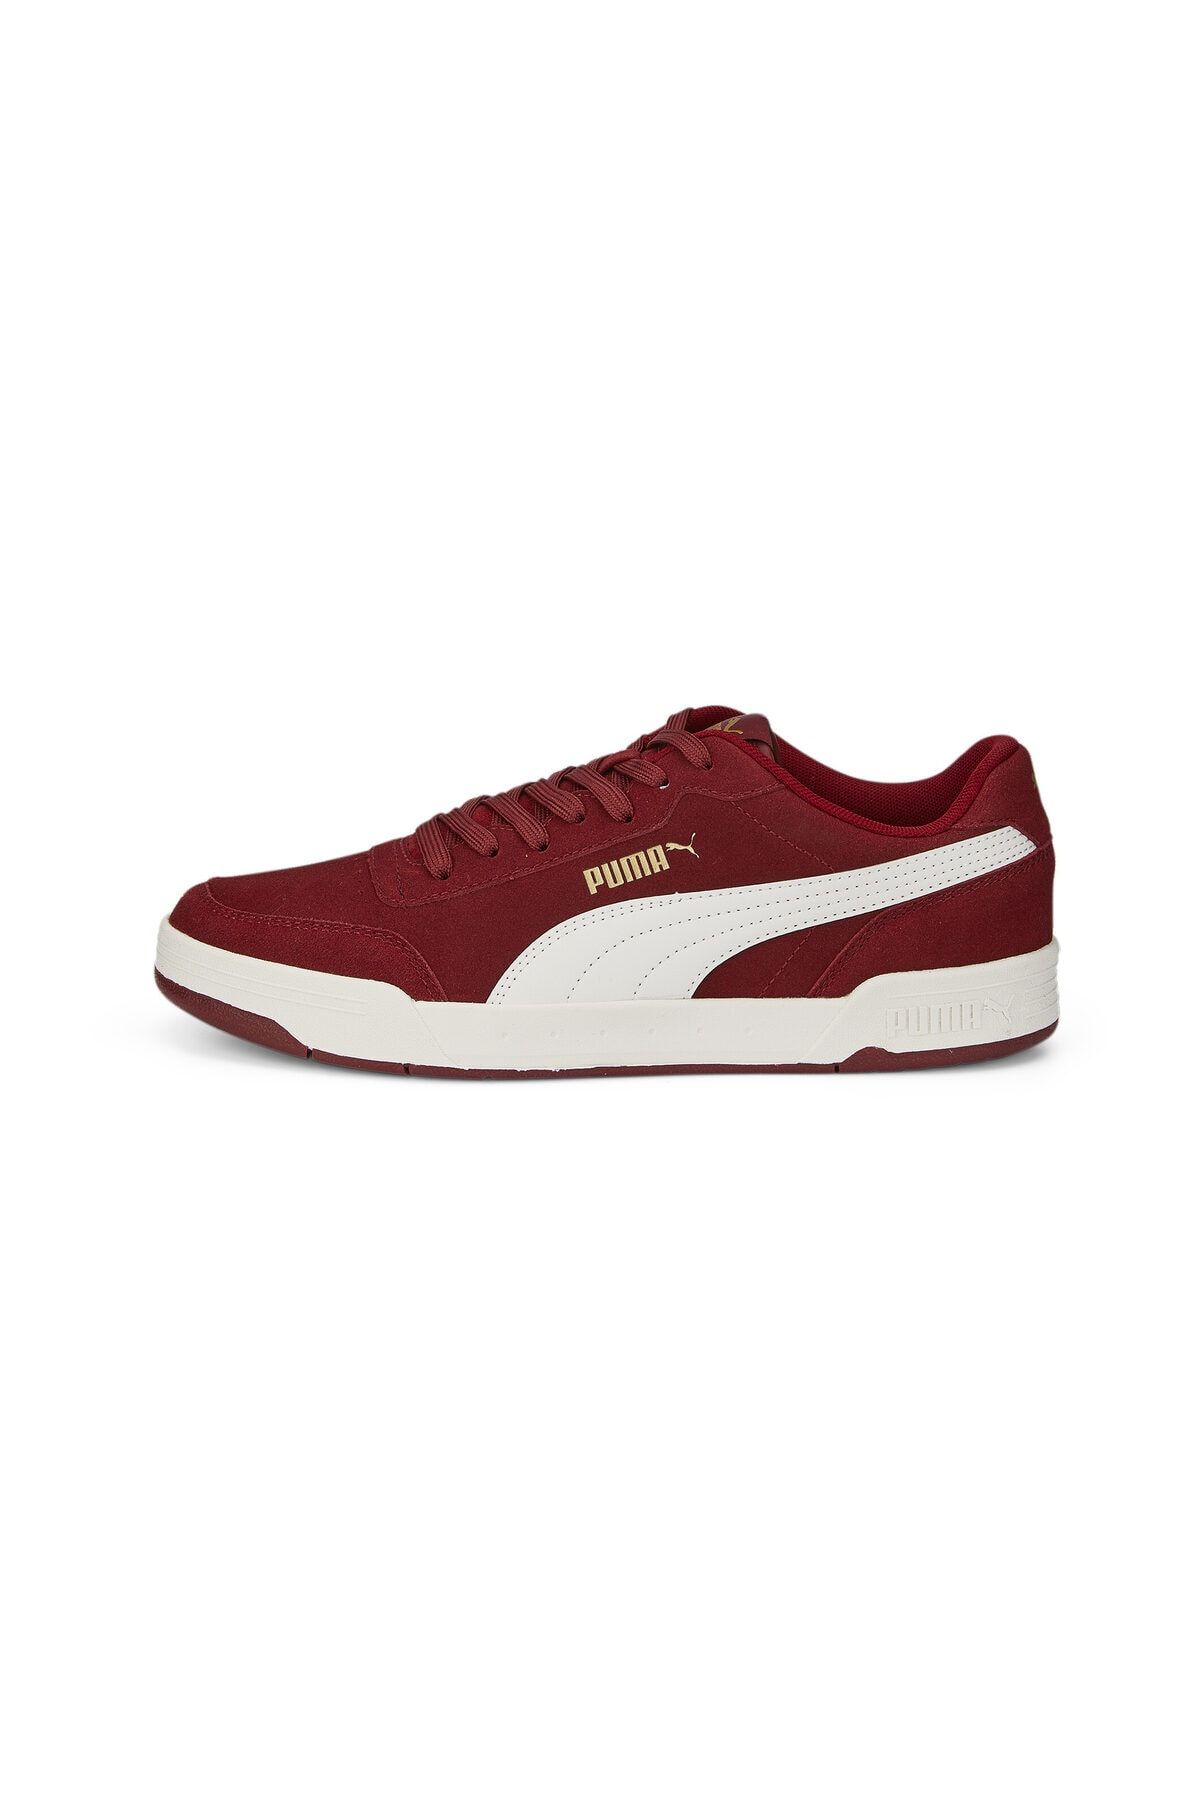 Puma Unisex Sneaker - Caracal SD Intense Red-Vaporous Gray-Pum - 37030425